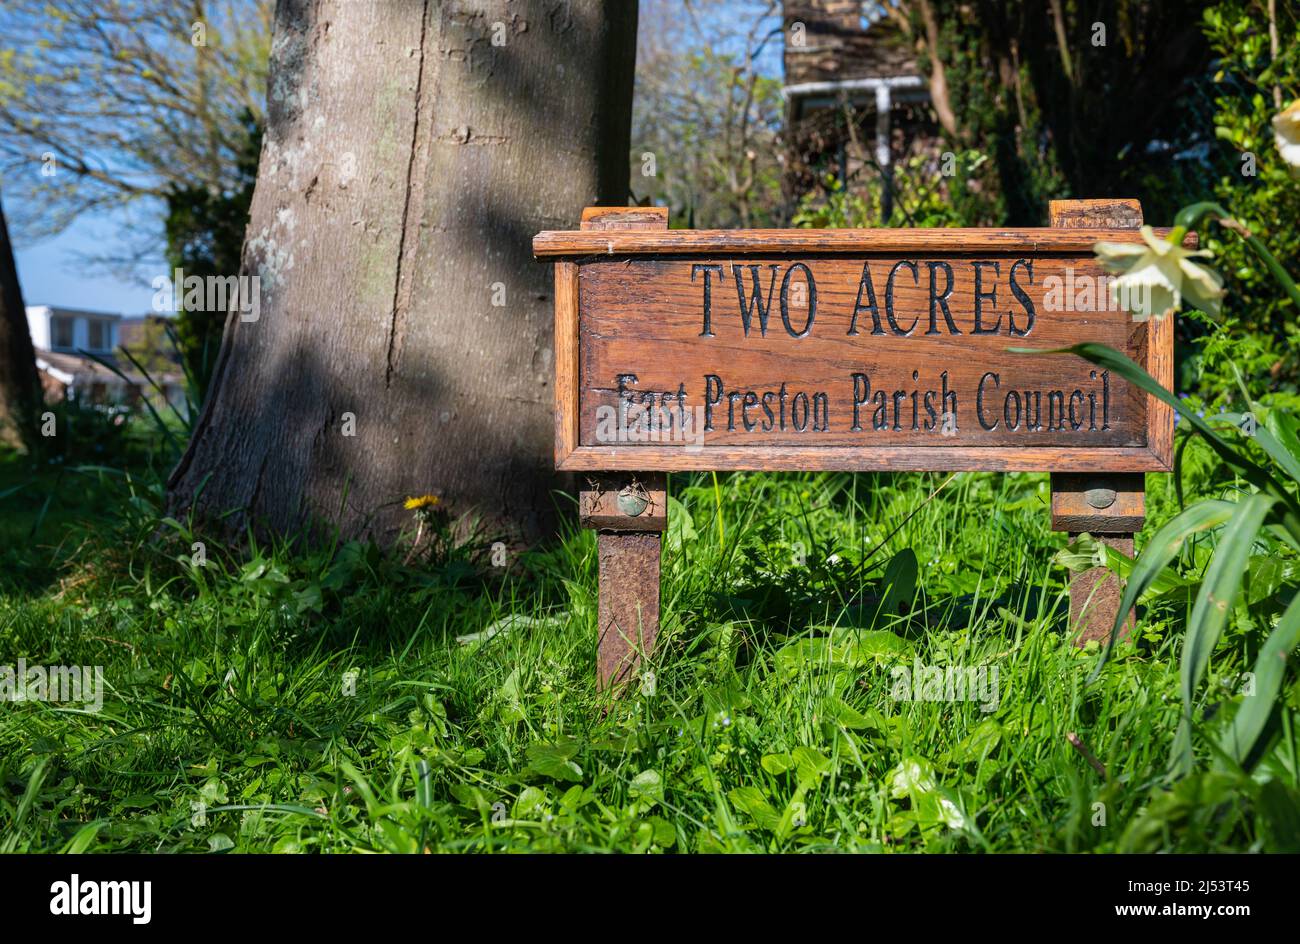 Segno a due acri, una piccola copse (un piccolo legno) in primavera a Preston est, Sussex ovest, Inghilterra, Regno Unito. Foto Stock